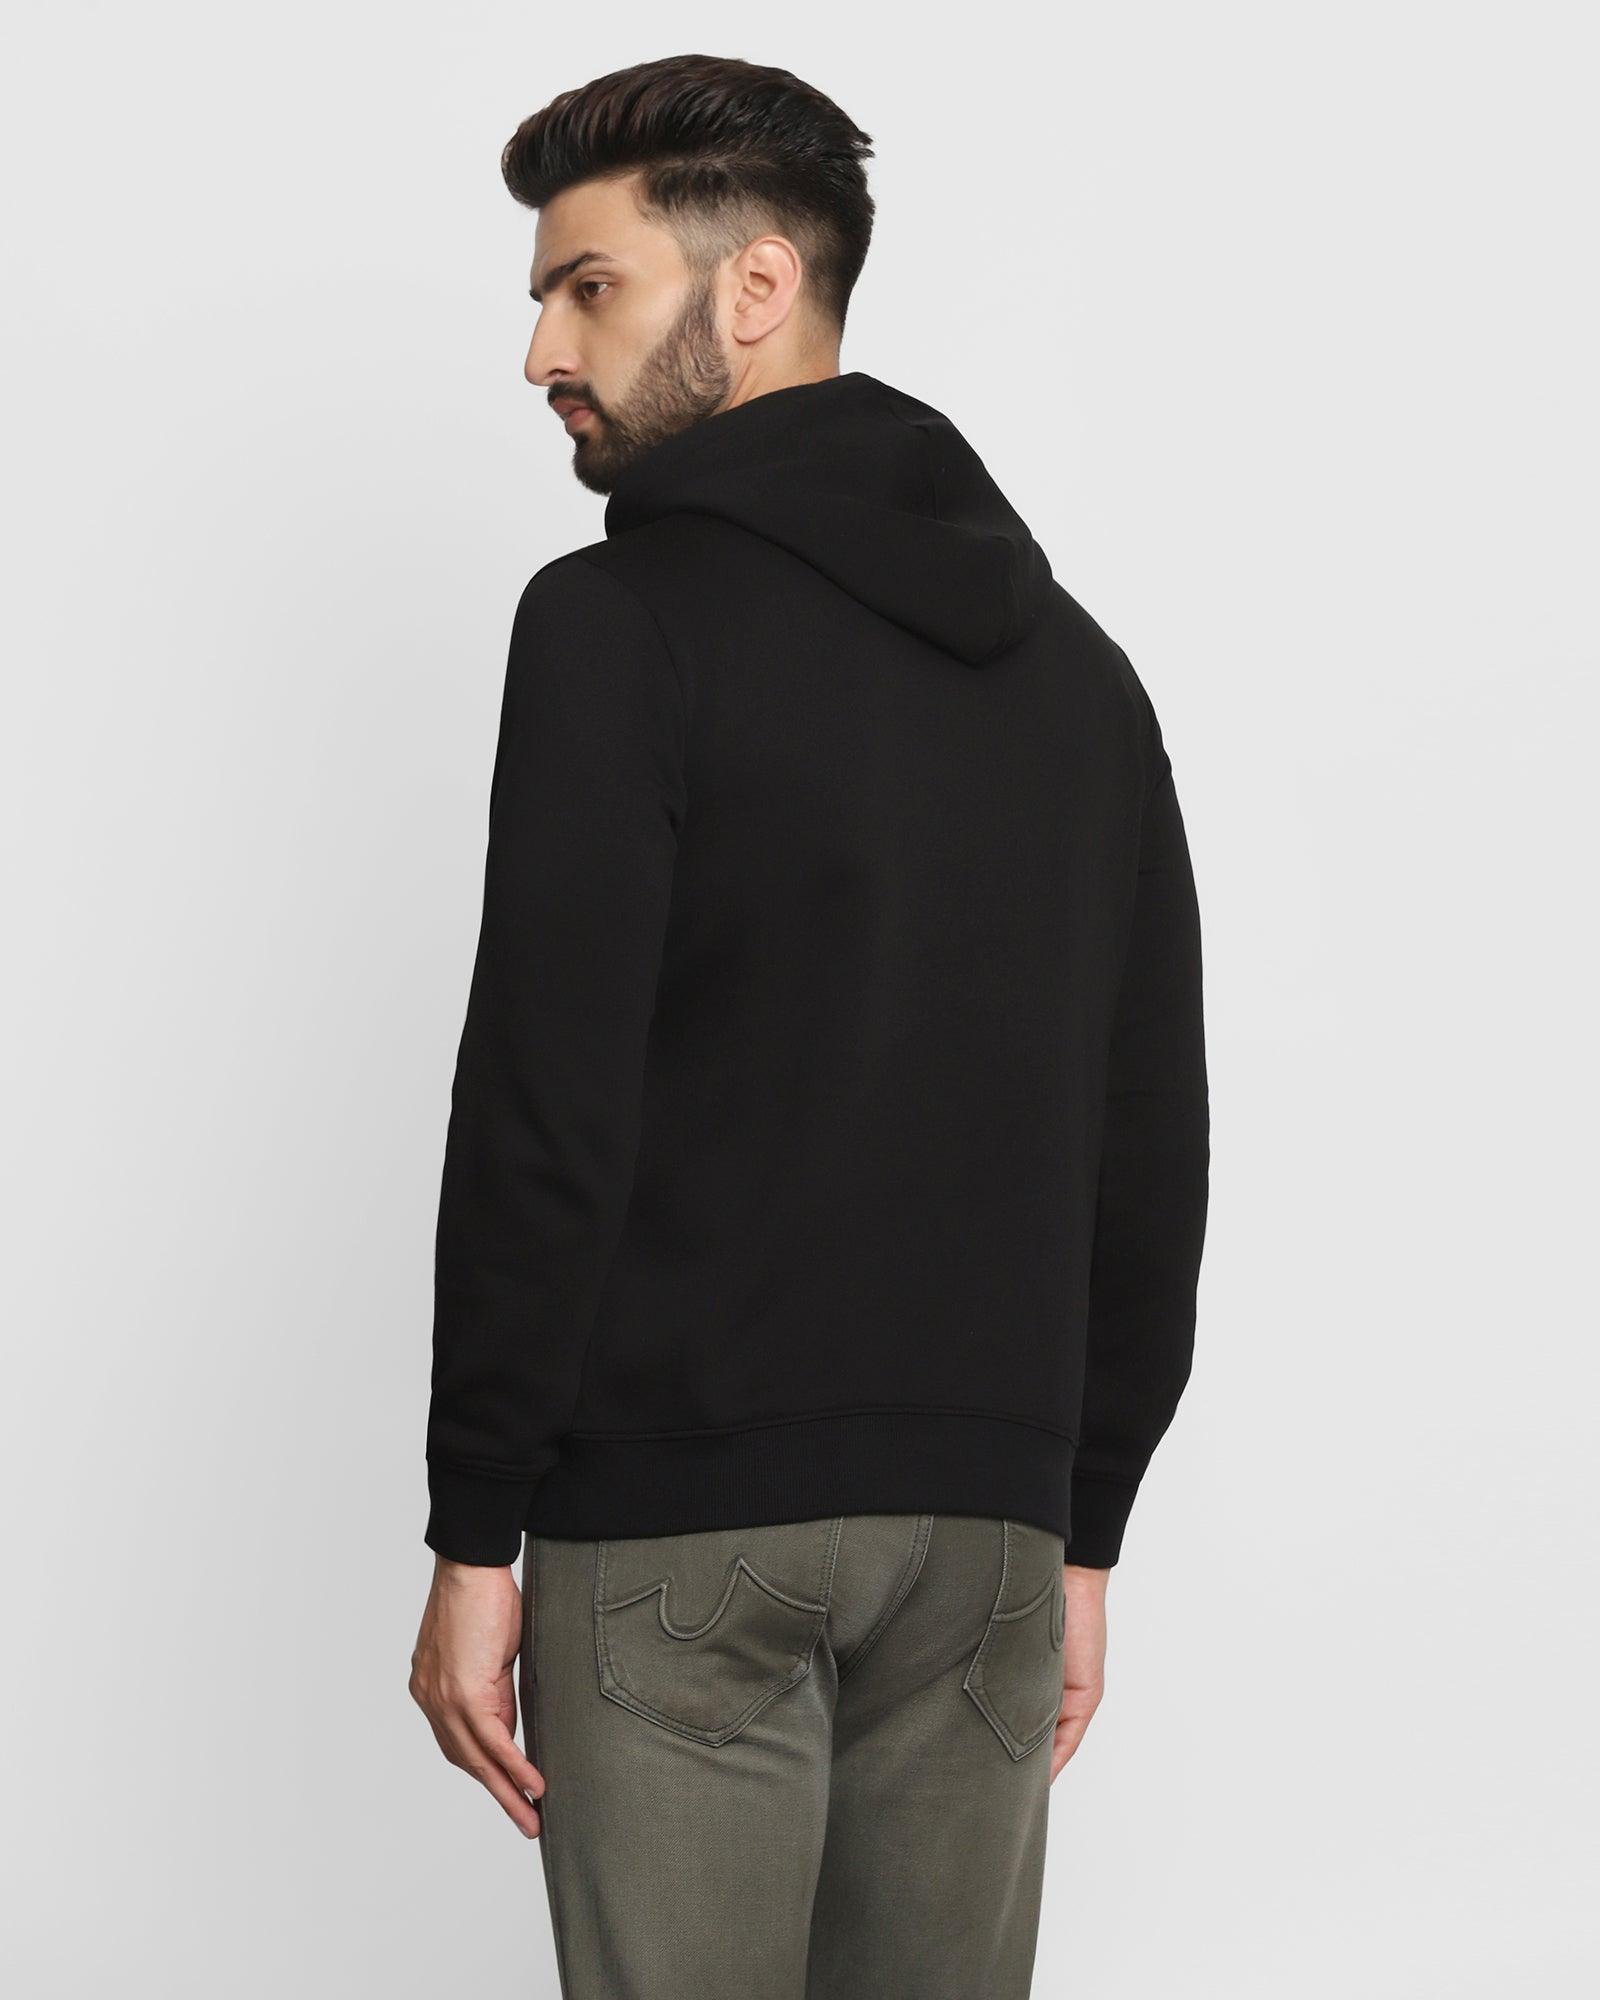 Hoodie Black Solid Sweatshirt - Kied